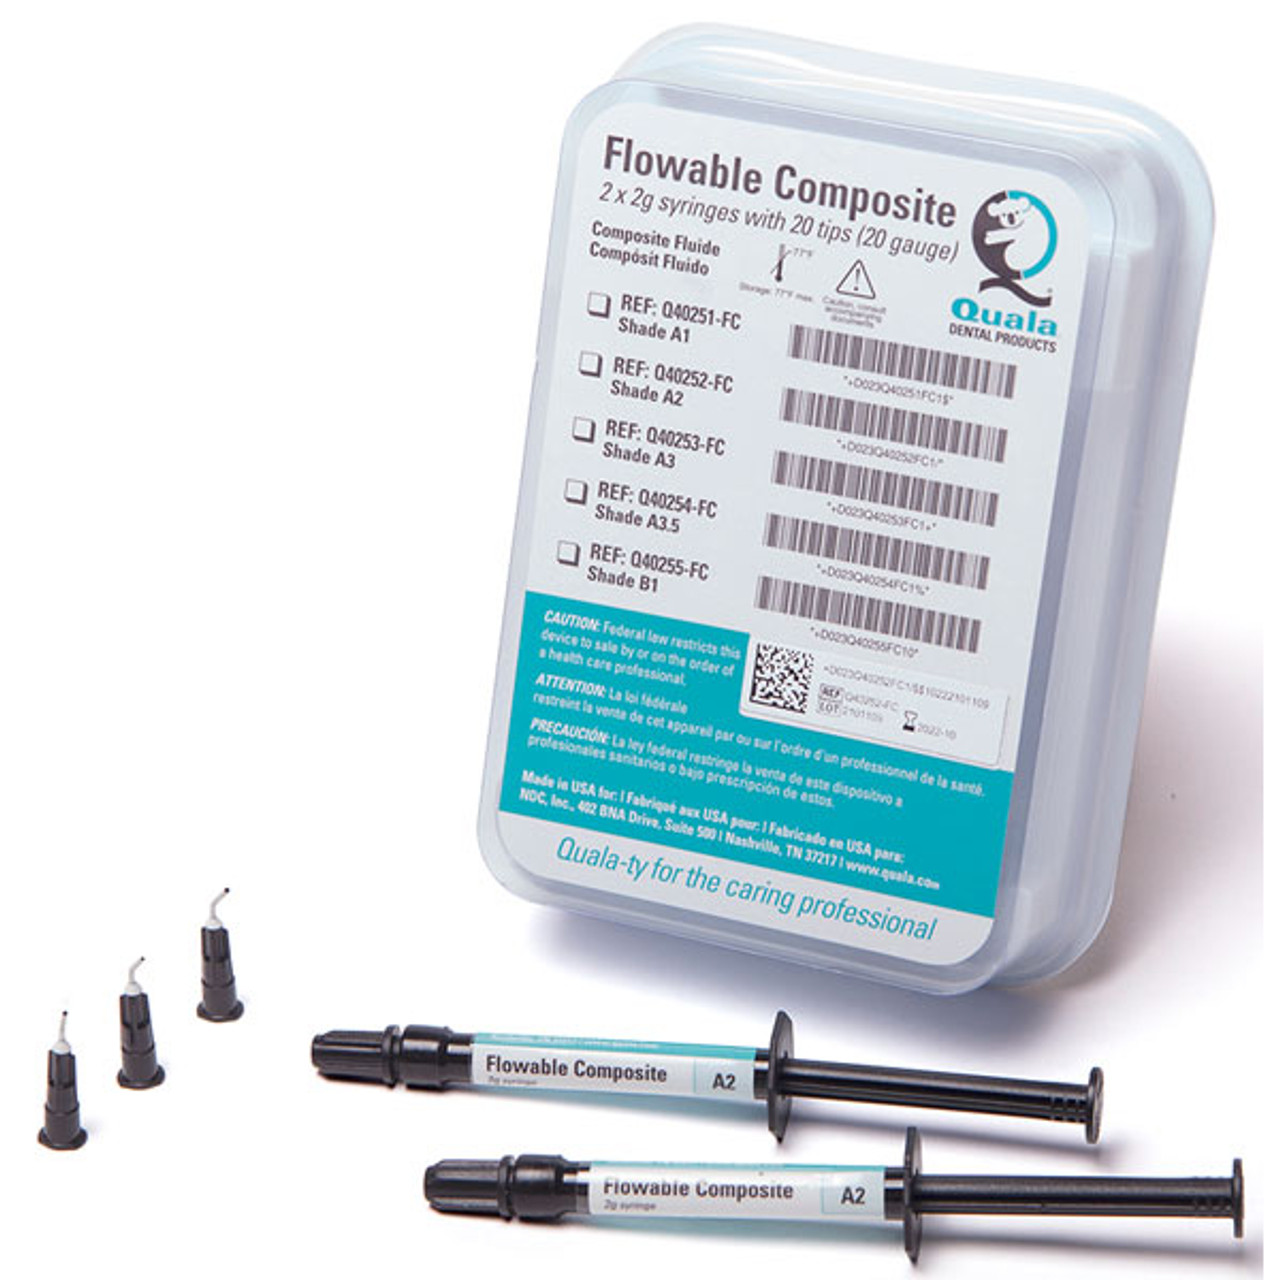 Quala Nano Flowable Composite Shade A3.5, 2 x 2g Syringes & 20x20Ga Tips, pk